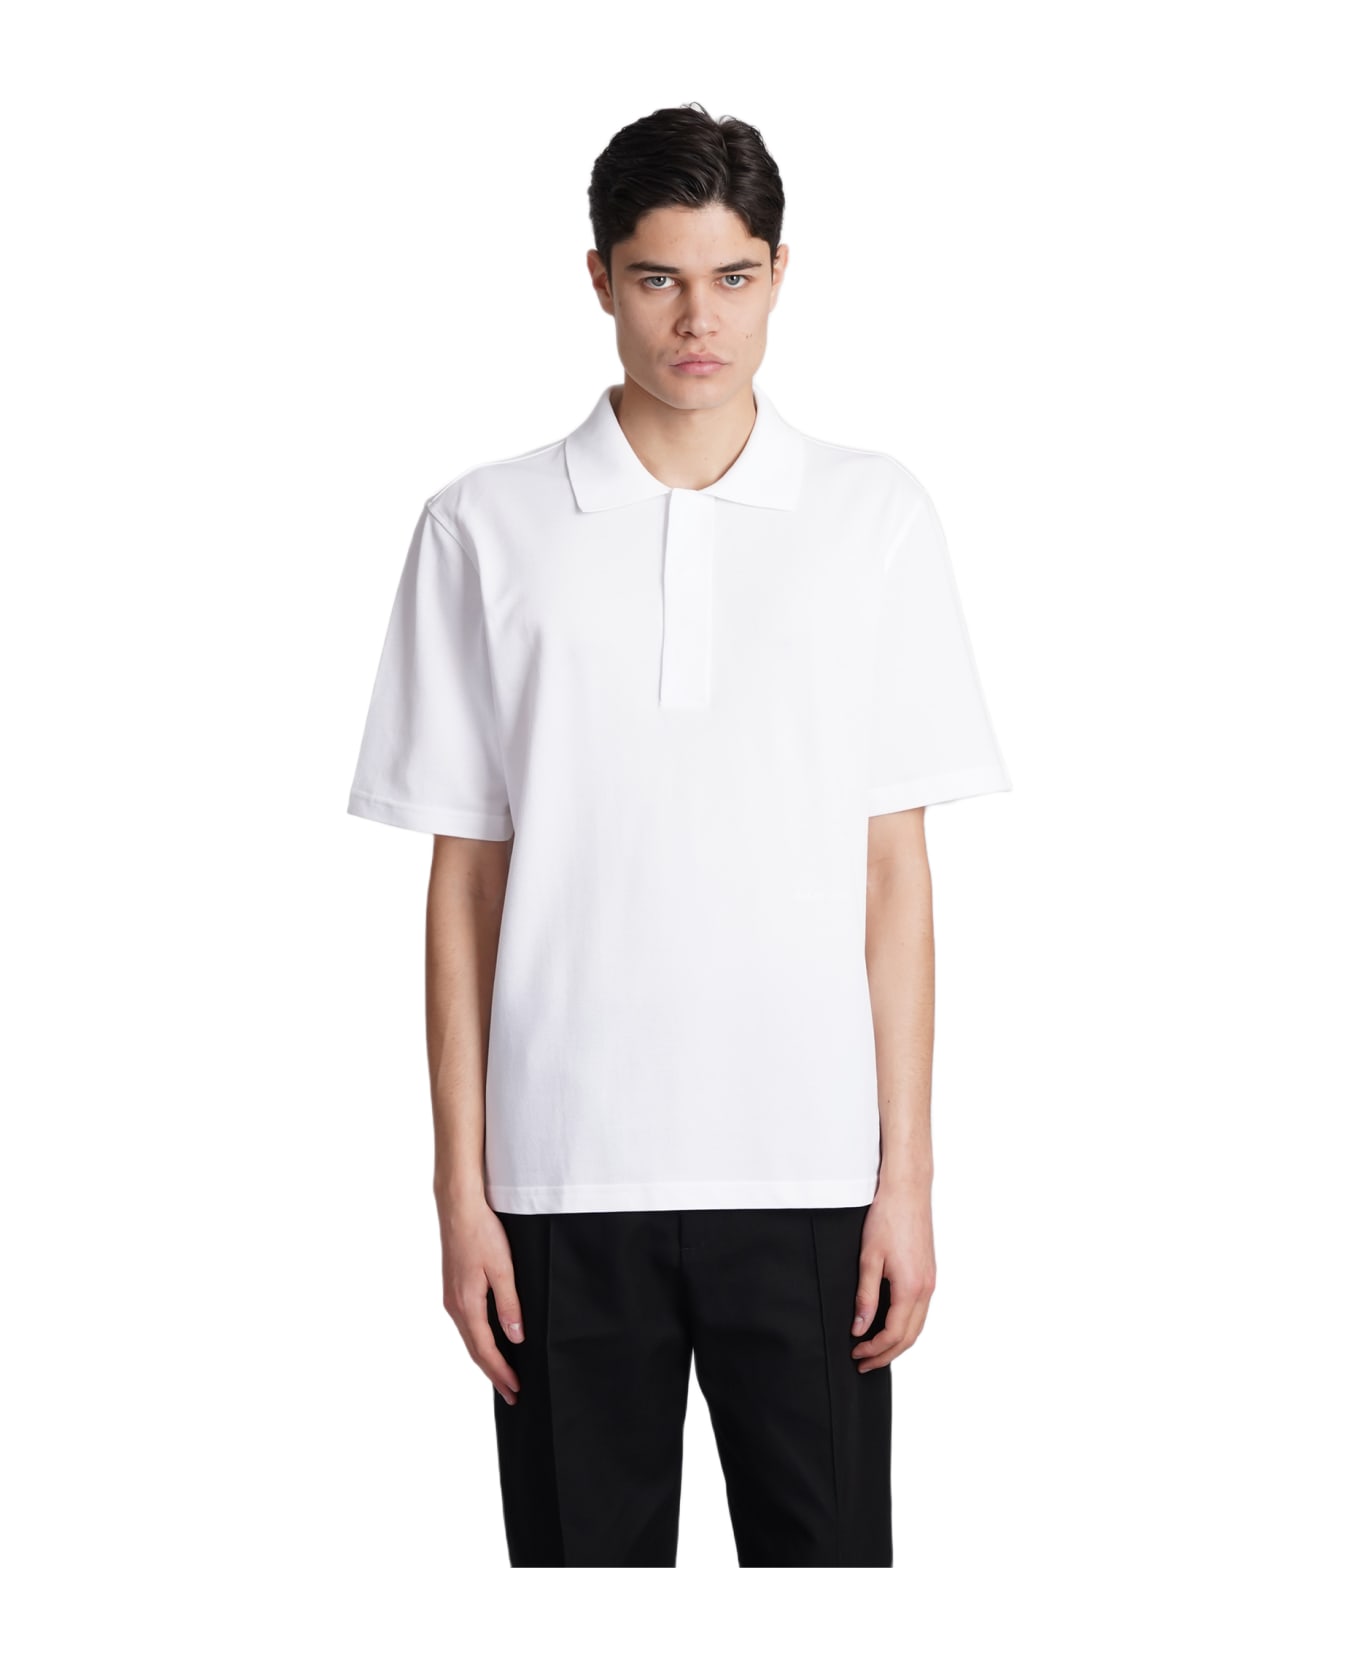 Lanvin Polo In White Cotton - white ポロシャツ